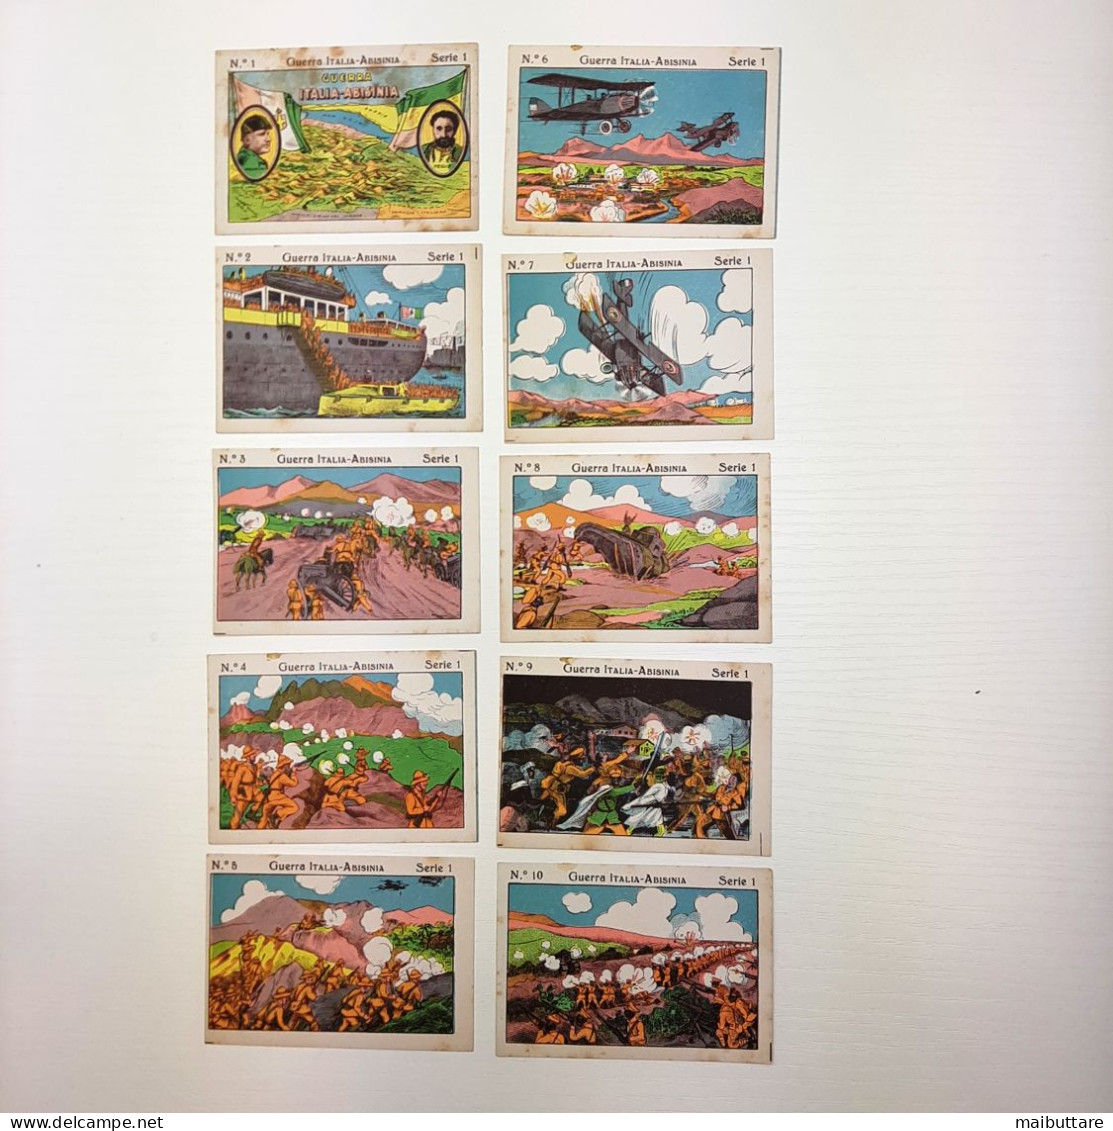 Lotto composto da 10 mini figurine, cartoline serie da 1 a 10 Guerra ITALIA -ABISINIA